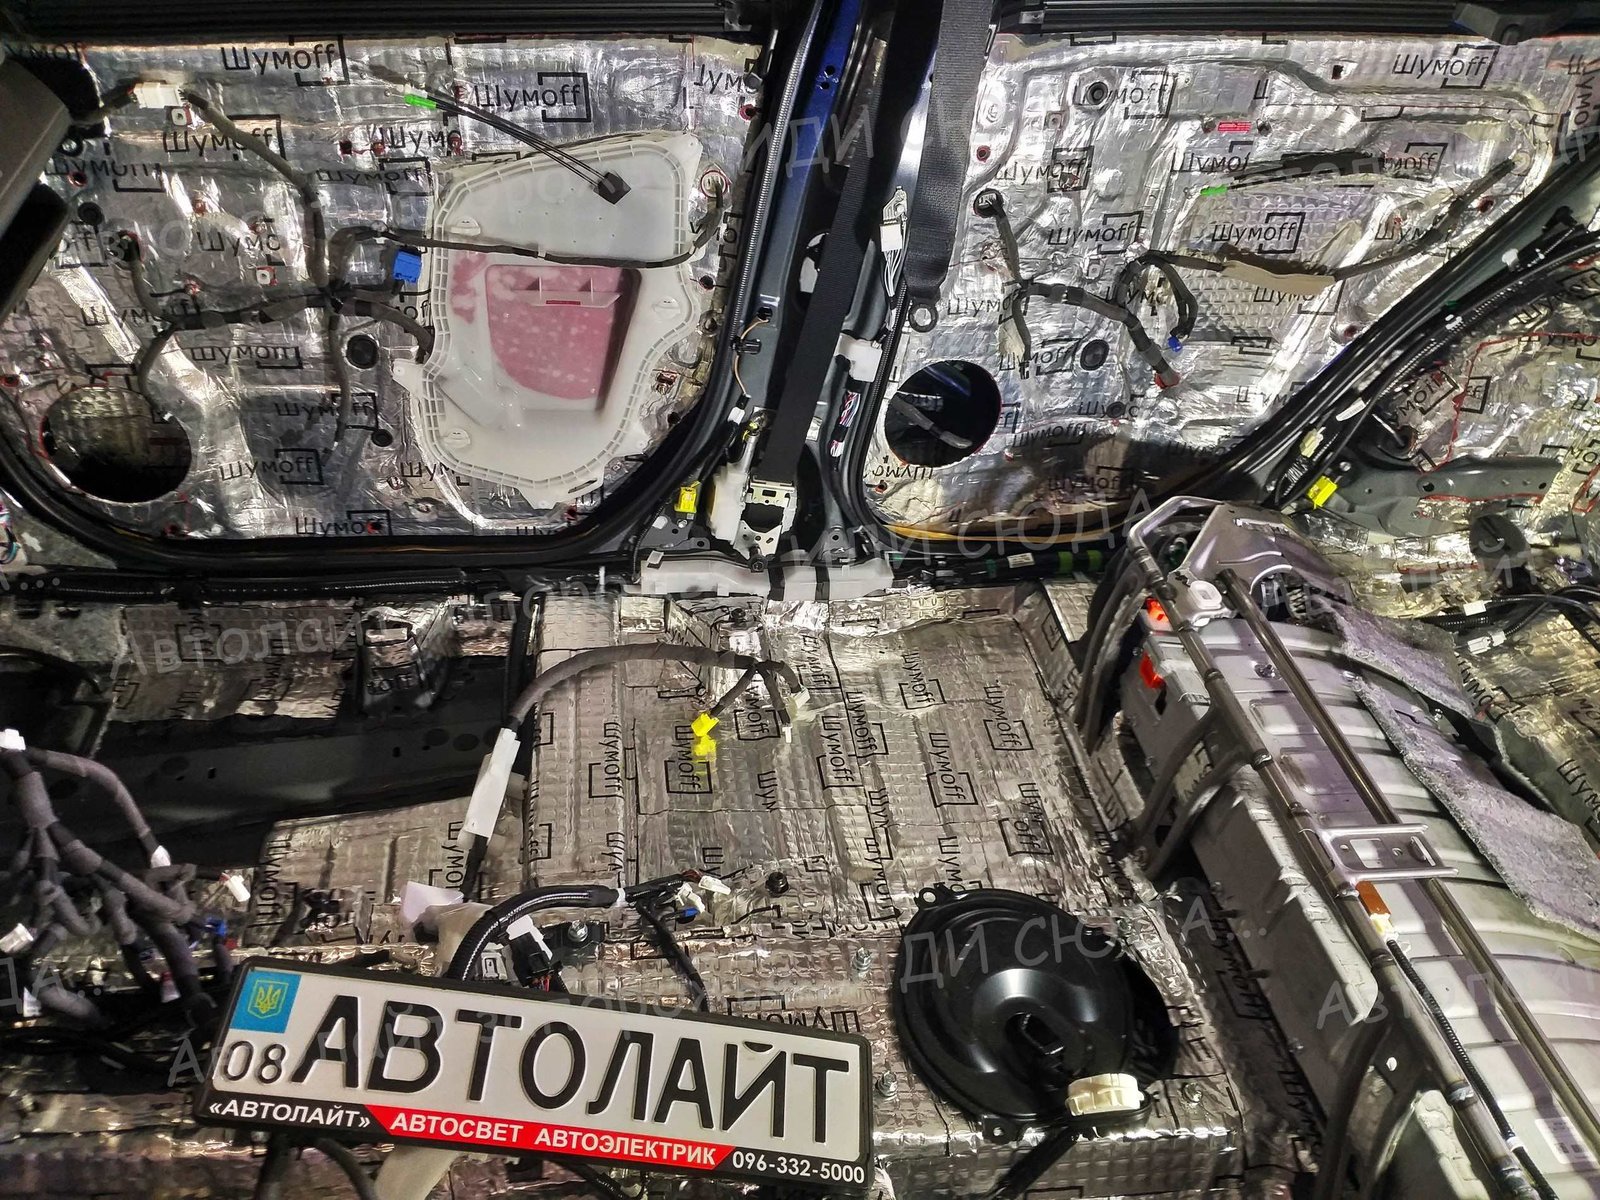 Фотогалерея шумоизоляция 44 🚗ⒶⓋⓉⓄⓁⒾⒼⓗⓉ🚗 студия "Автолайт" Качественный автосвет в Запорожье